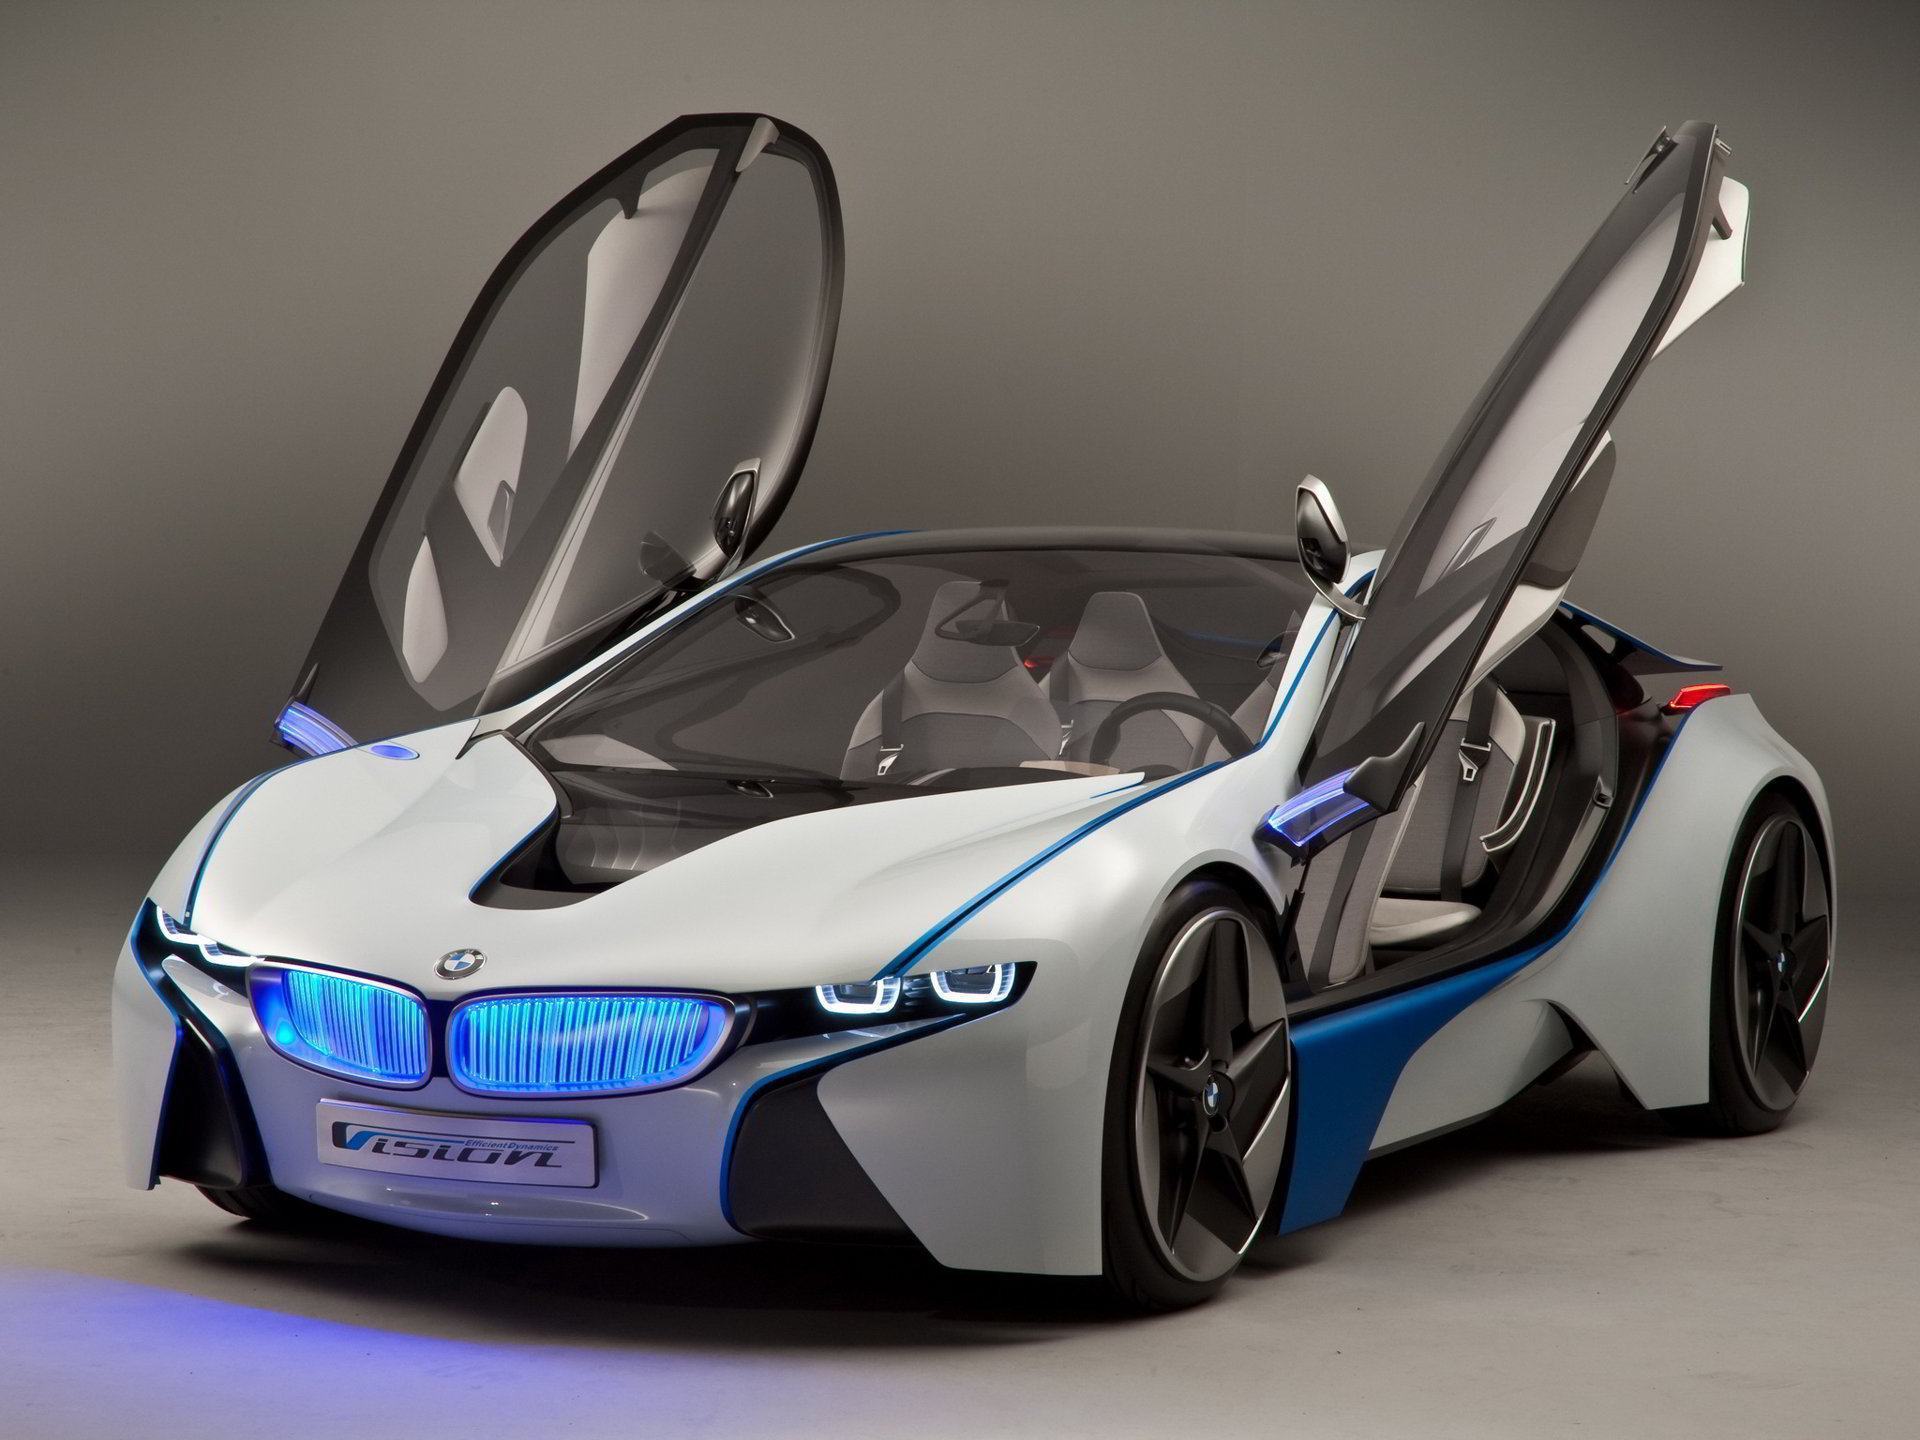 Mời bạn đến khám phá chiếc xe ô tô BMW sang trọng và tinh tế này! Với thiết kế tinh tế và động cơ mạnh mẽ, chiếc xe ô tô BMW là biểu tượng của sự sang trọng và hiệu suất.